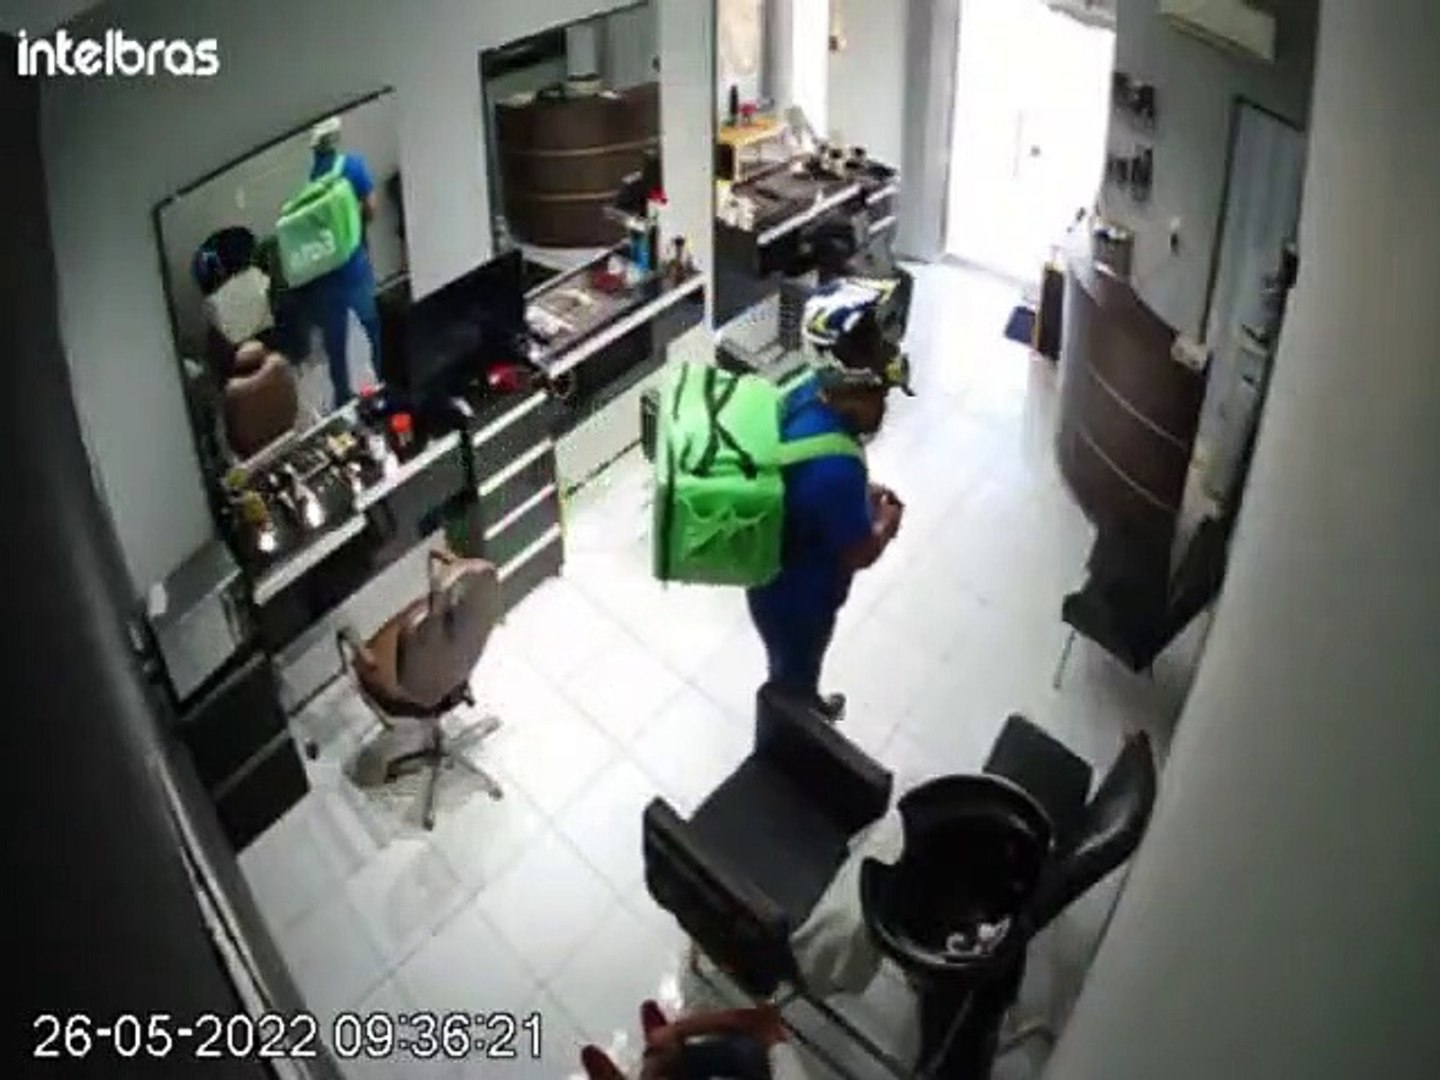 Criminoso invade barbearia e rende funcionários em Fortaleza - Vídeo  Dailymotion